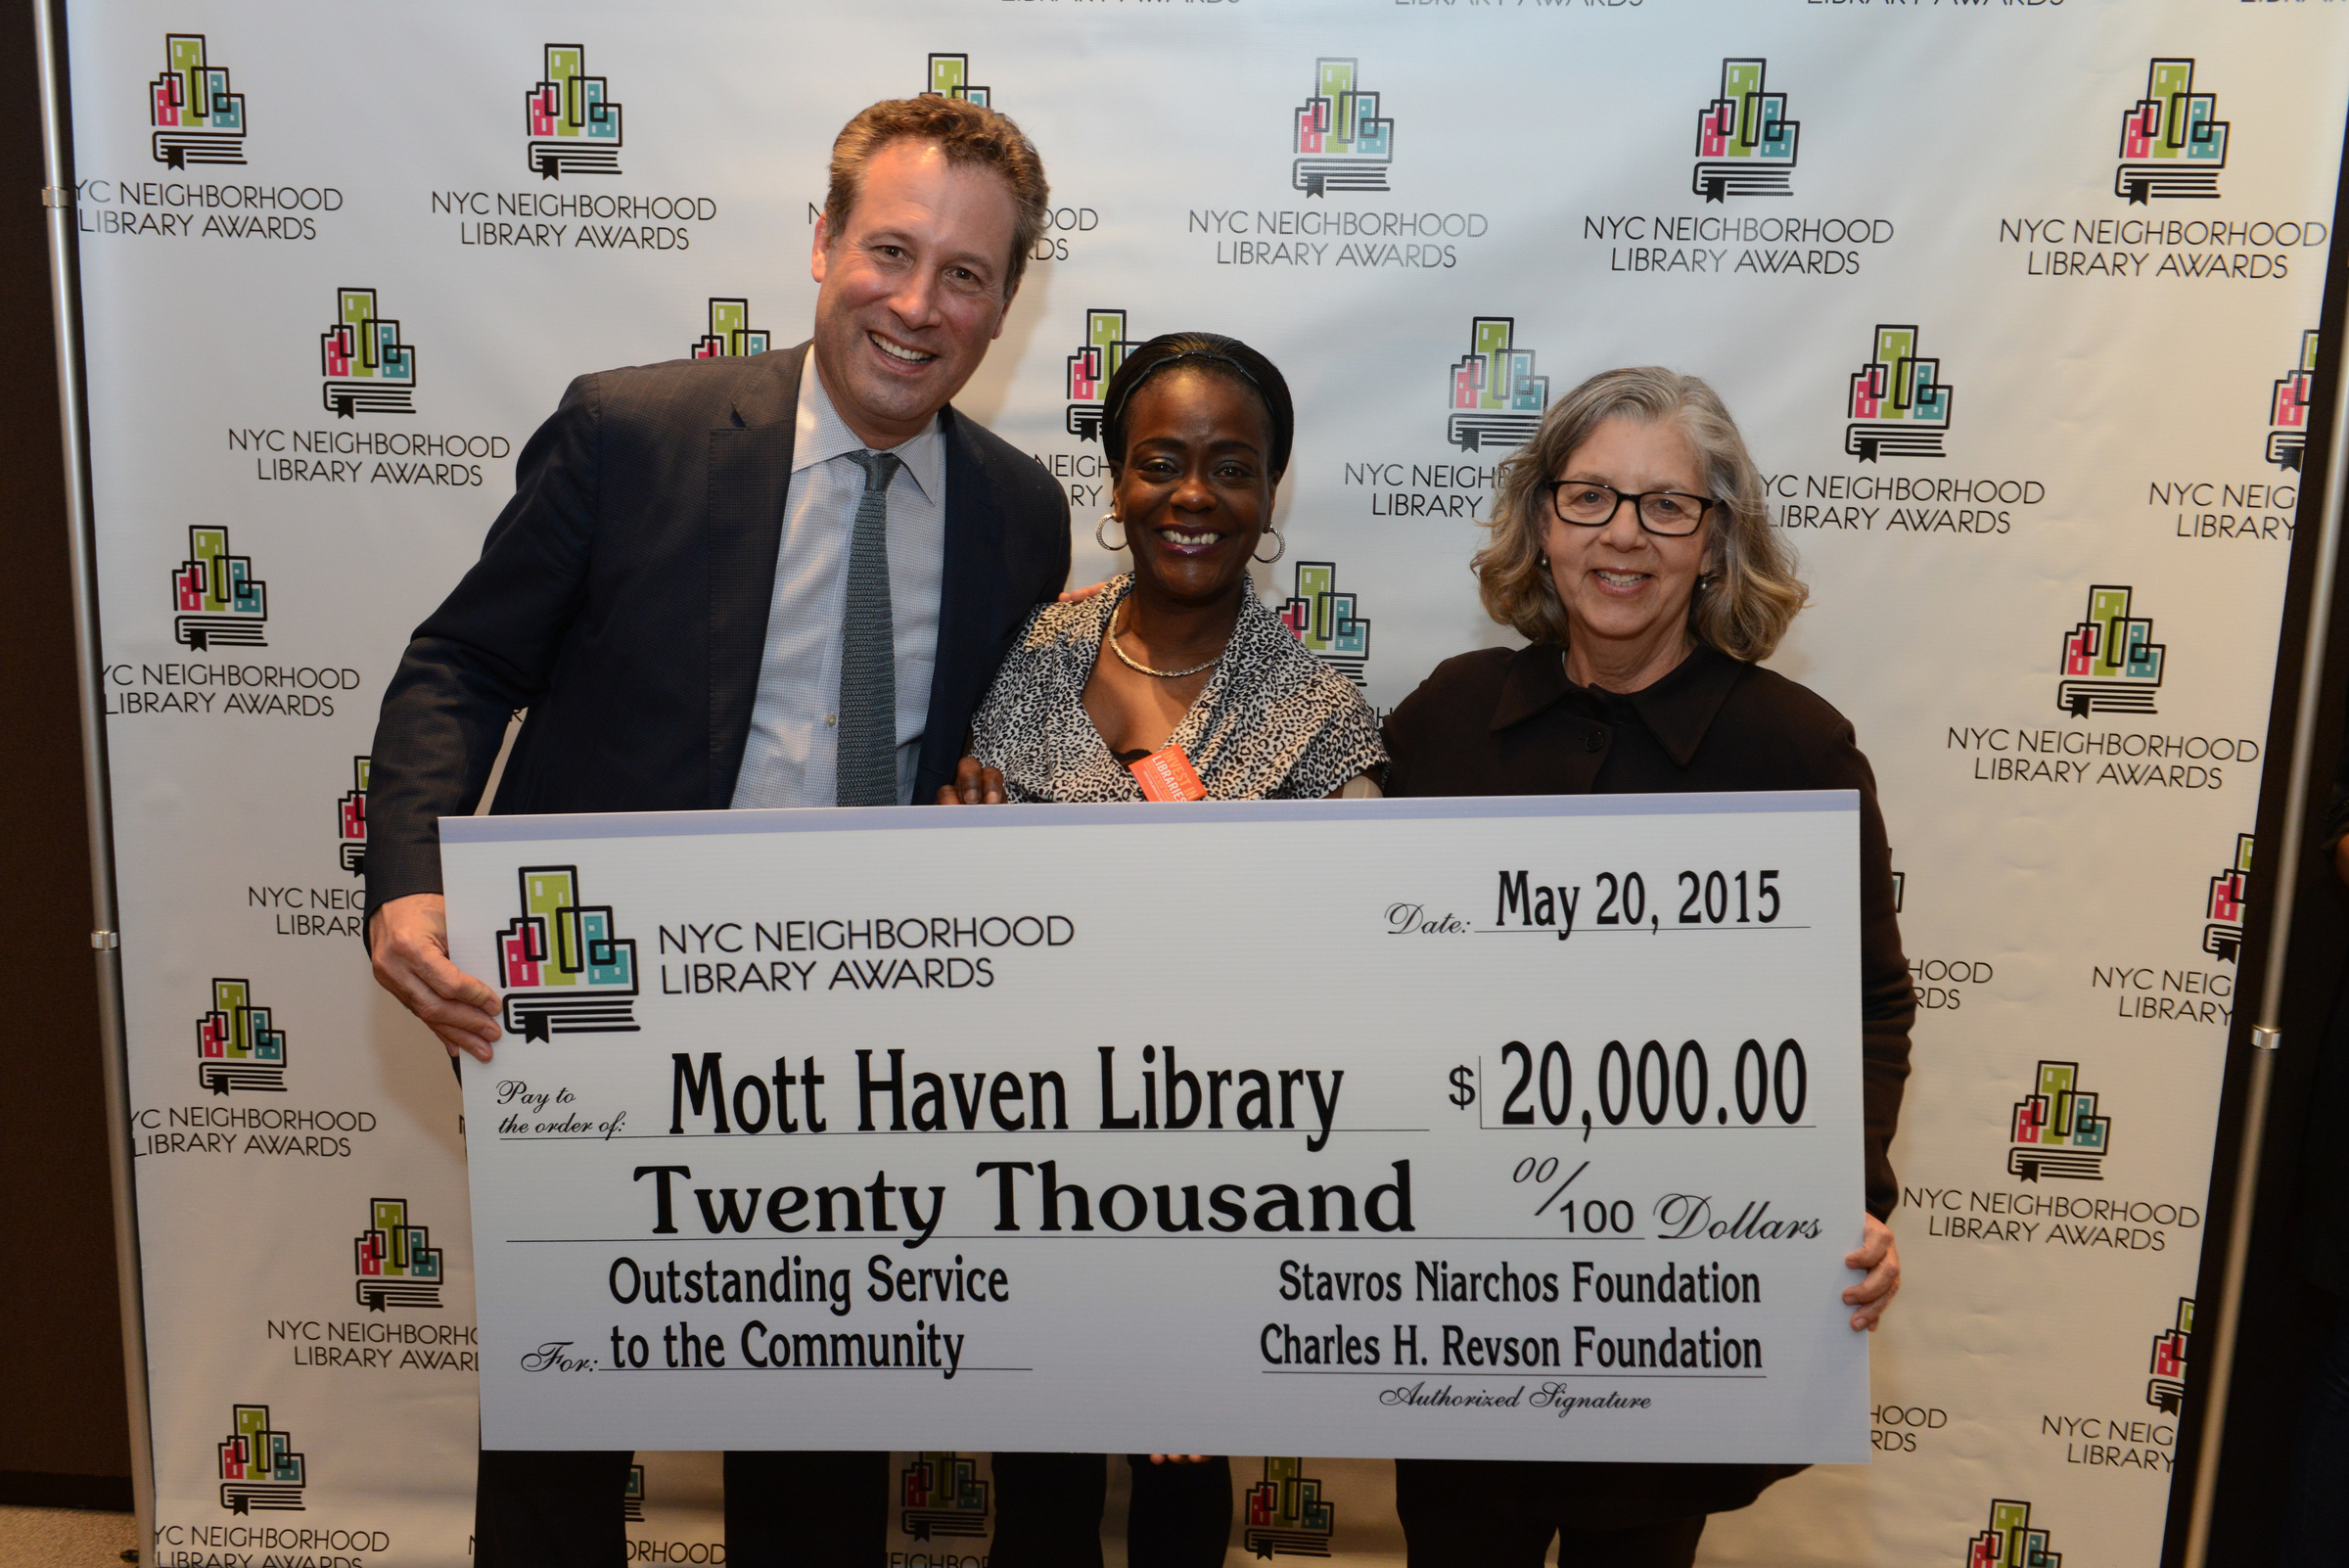 L to R: NYPL President Tony Marx, Mott Haven Library Manager Jeanine Thomas-Cross, and Library Awards Judge Maira Kalman